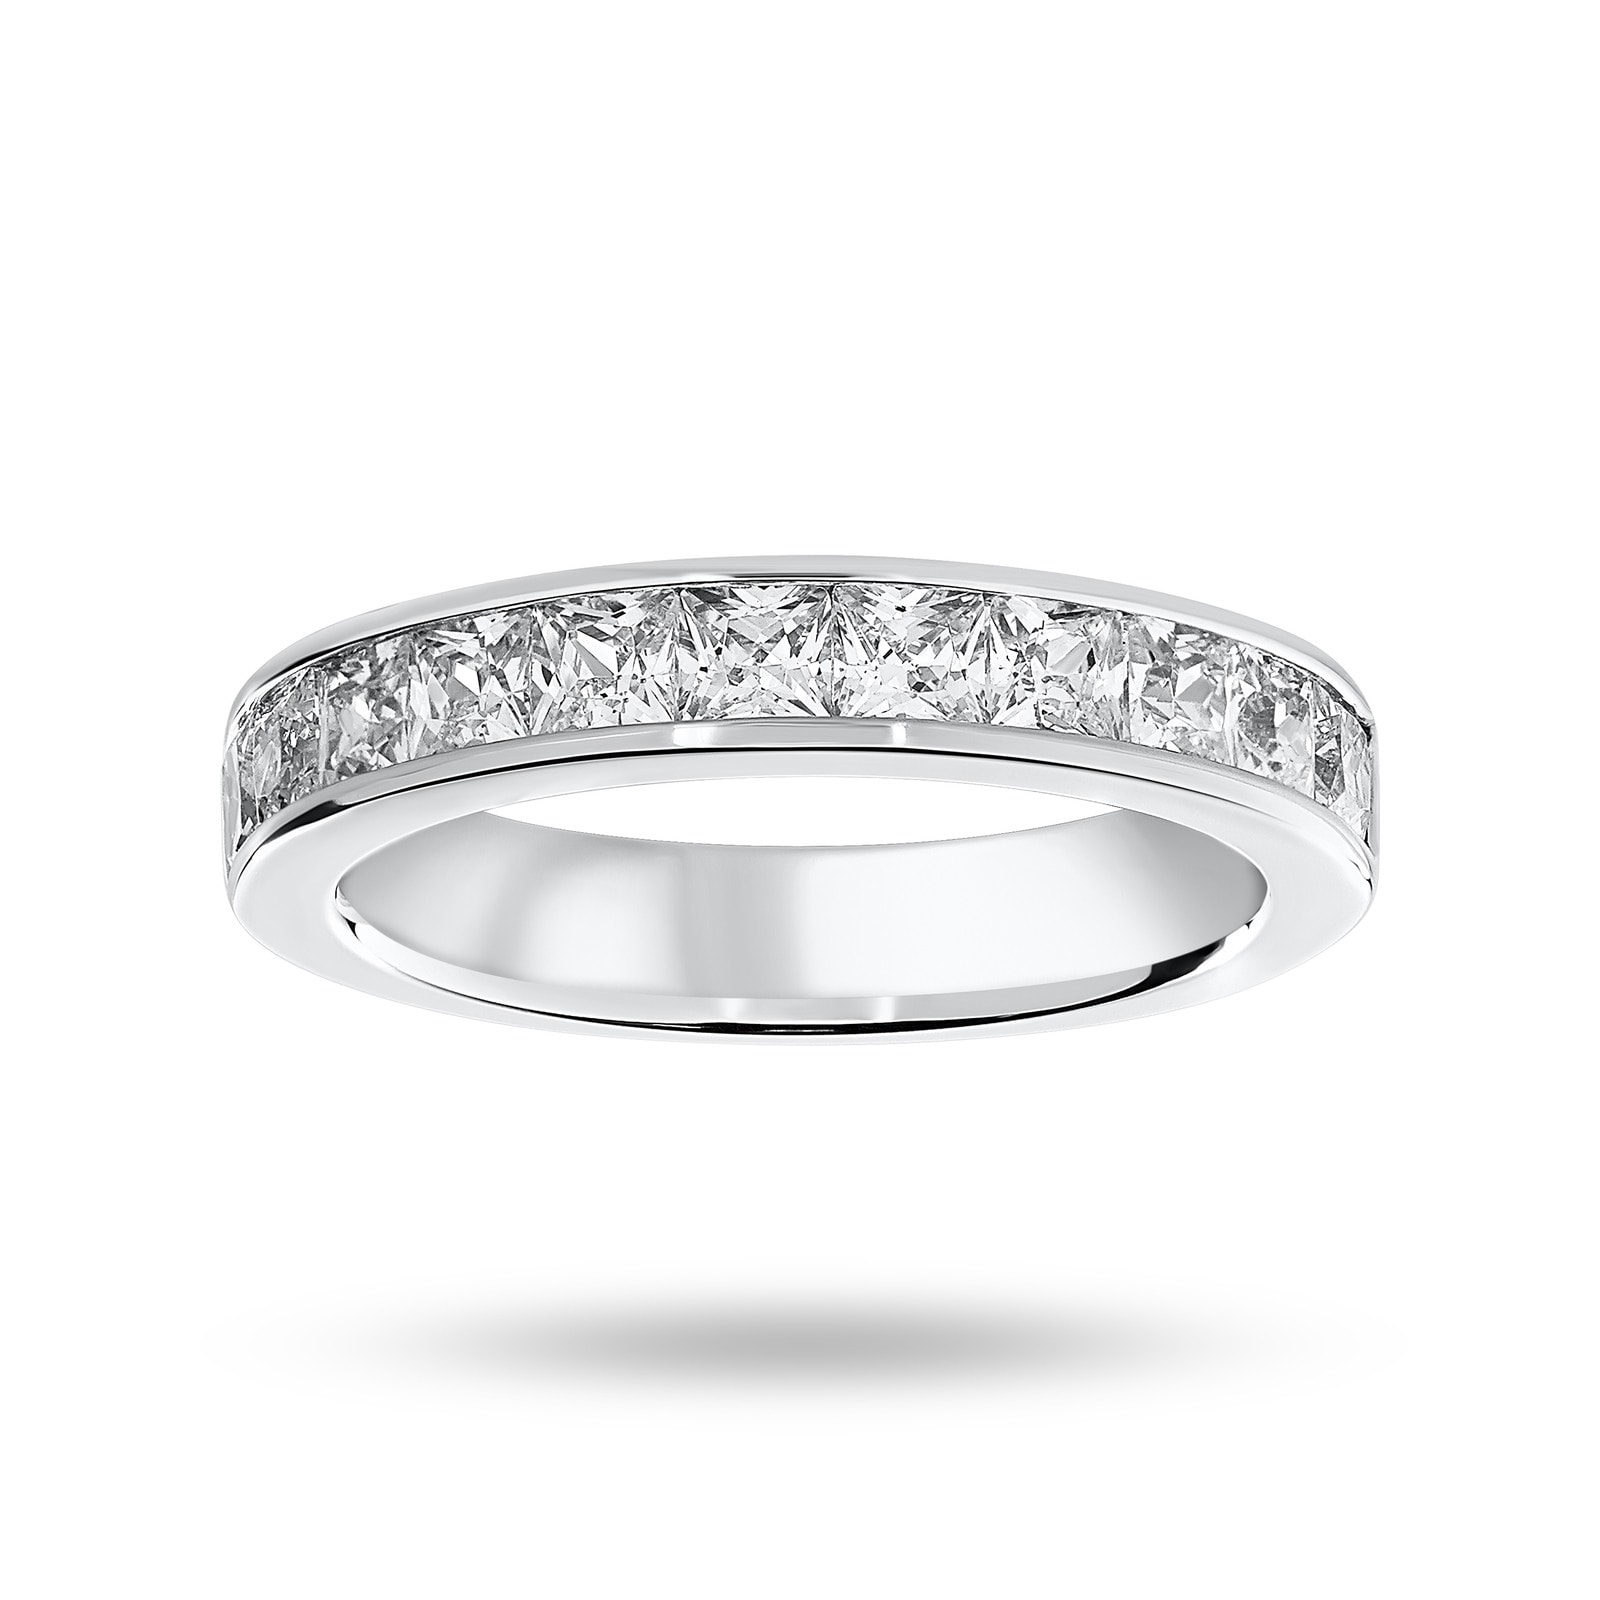 18 Carat White Gold 1.50 Carat Princess Cut Half Eternity Ring - Ring Size P